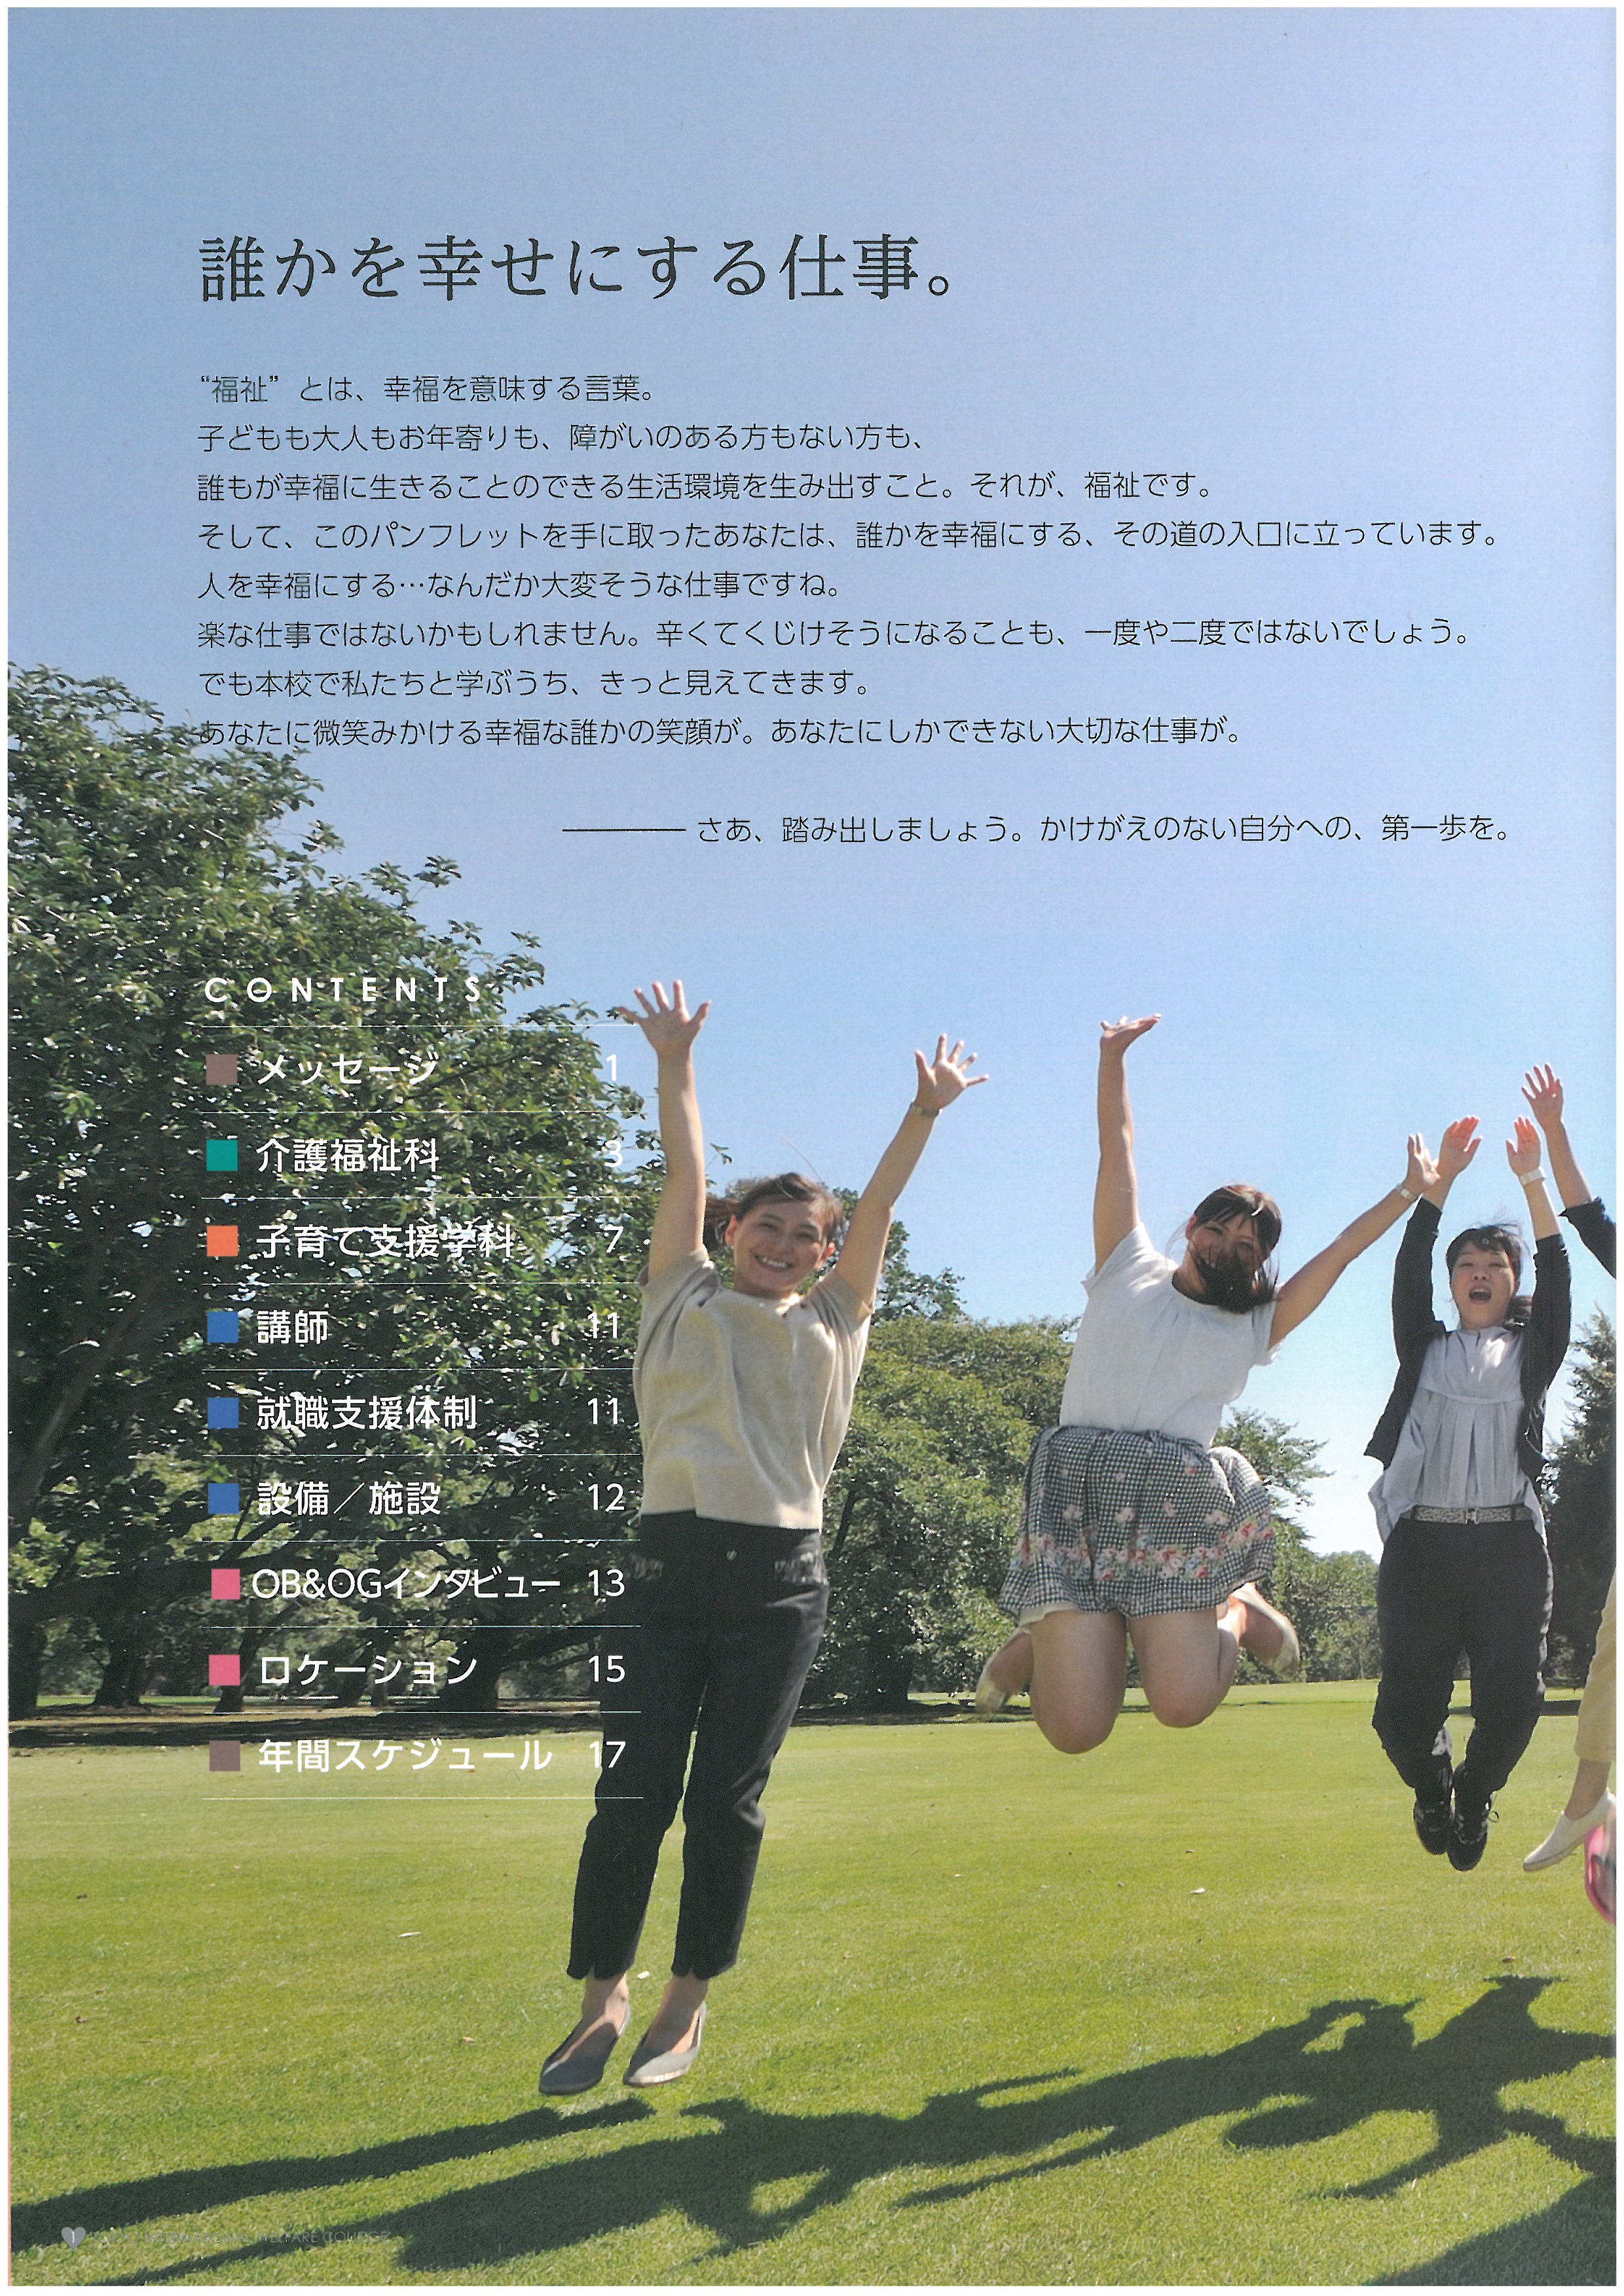 도쿄 국제복지전문학교 홍보 팜플렛 02.jpg